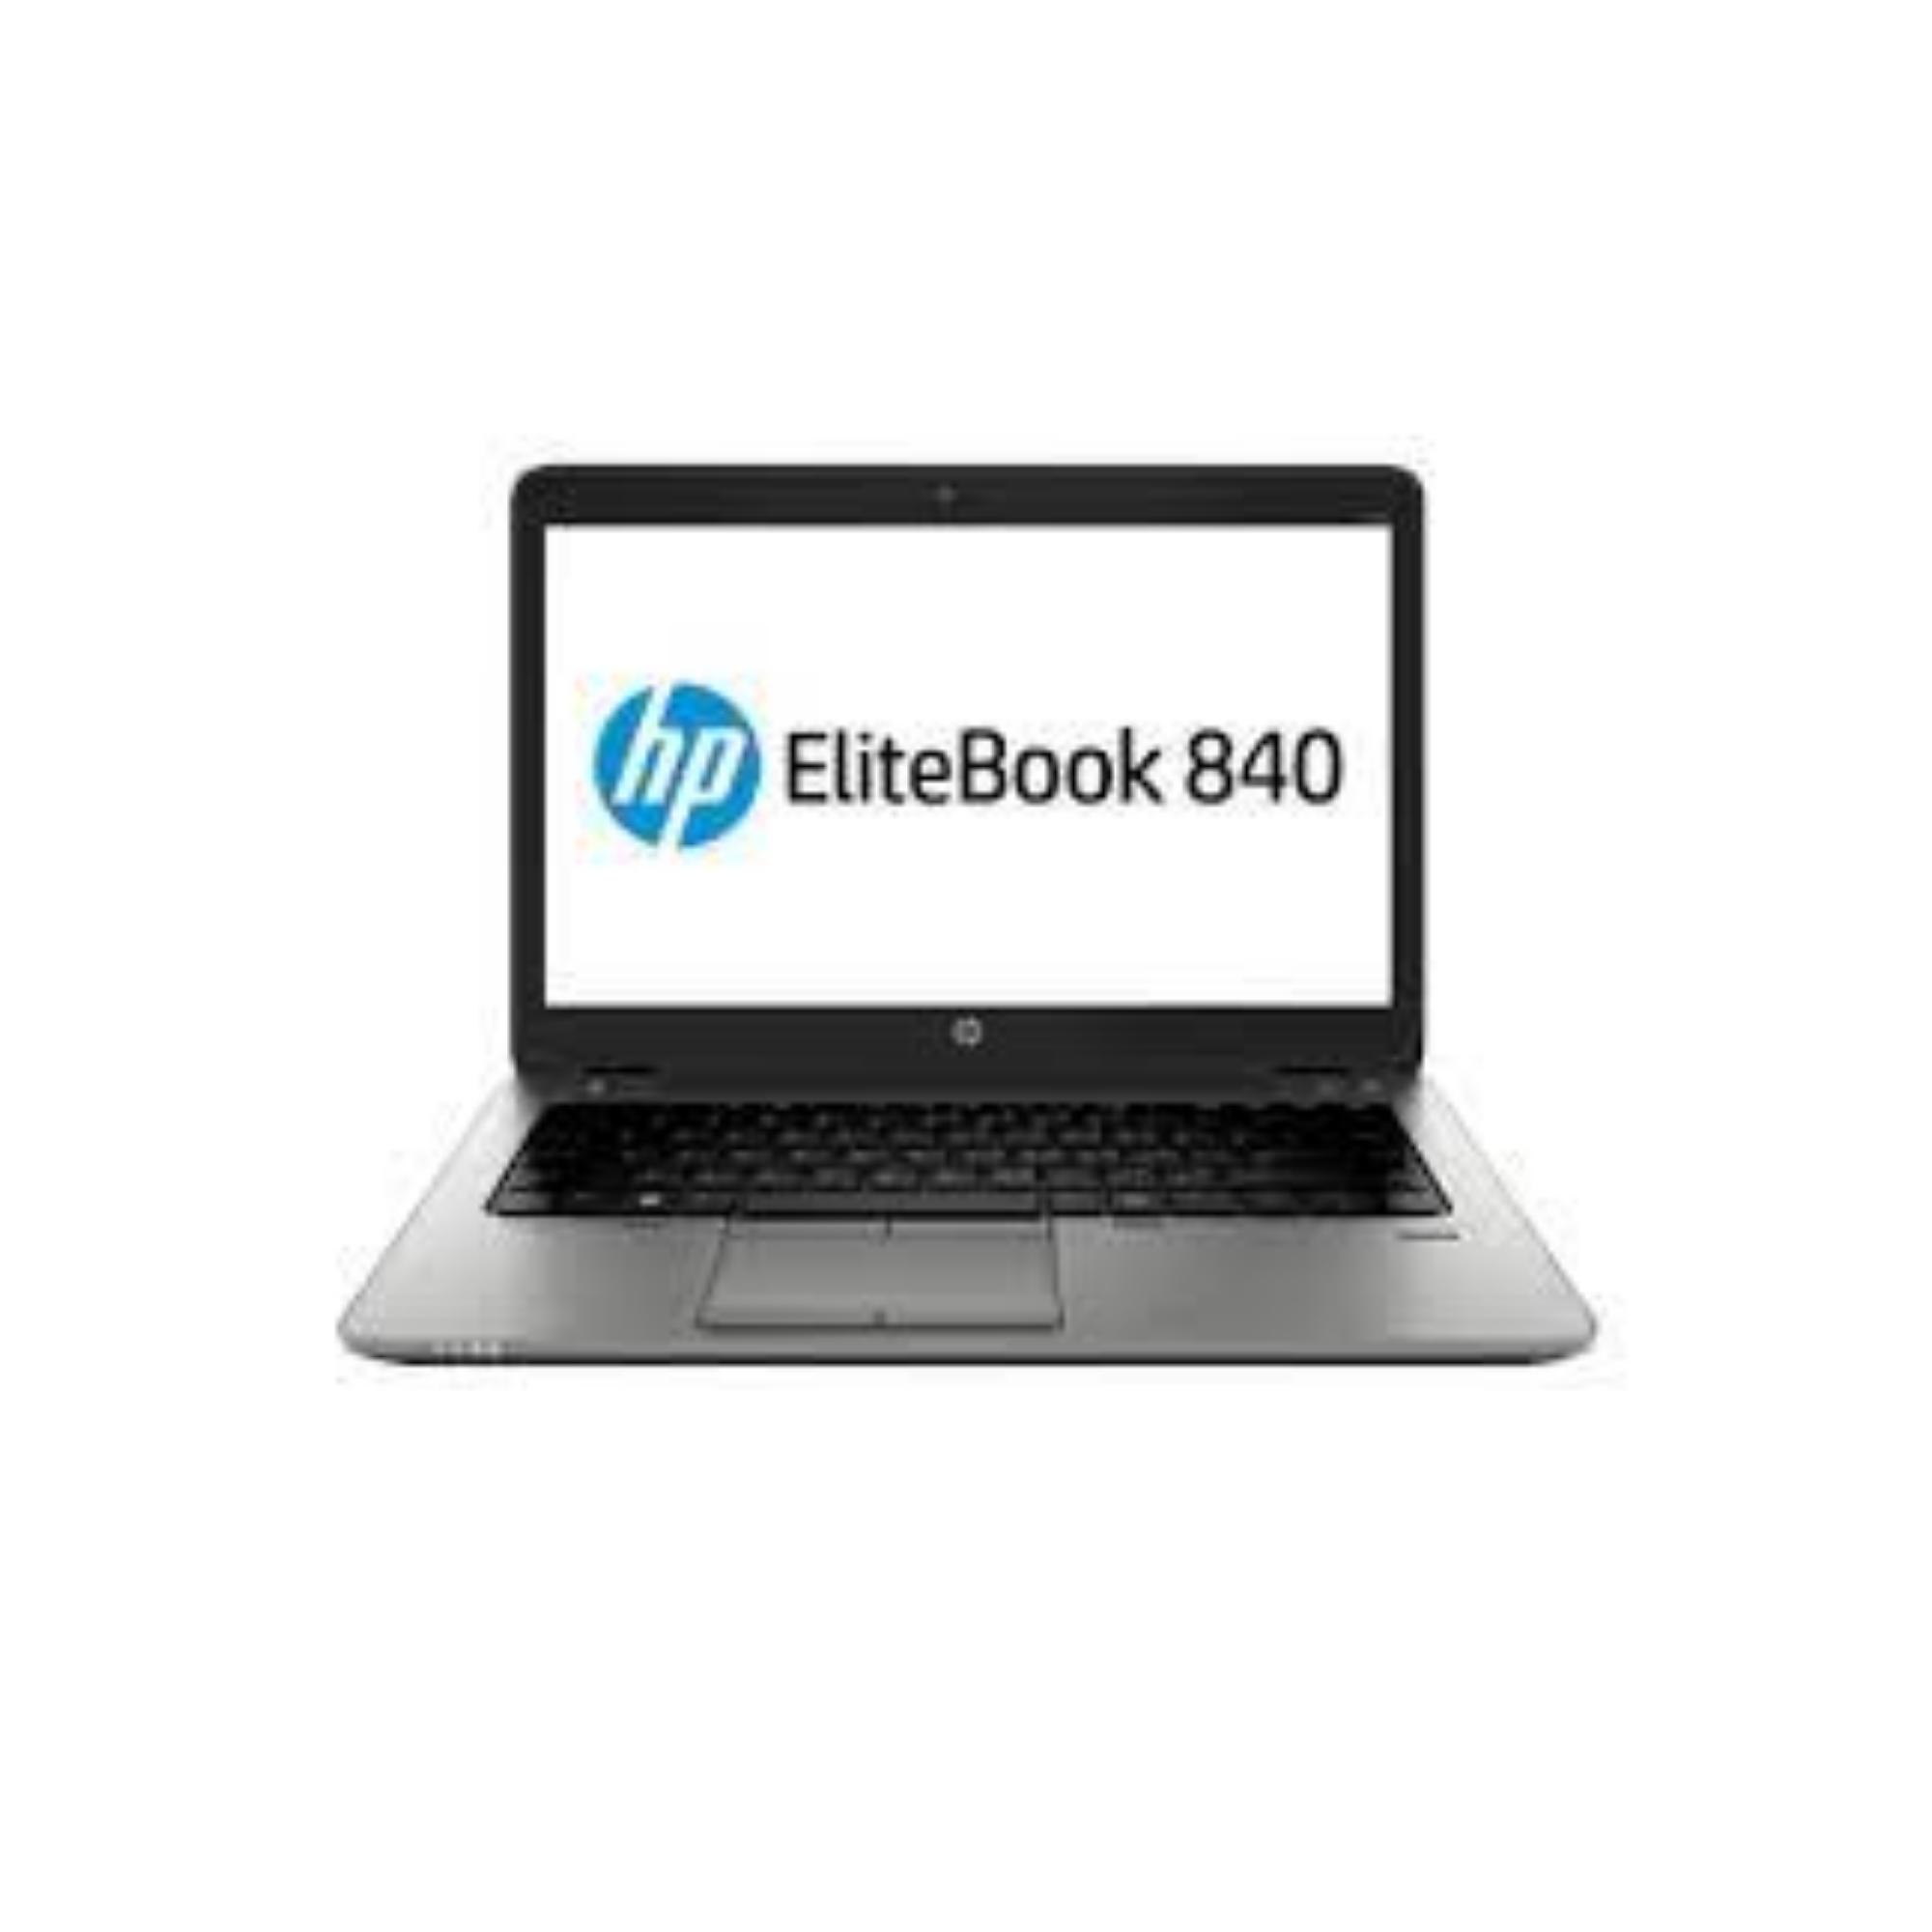 Desktop – HP ELITEBOOK 840 G3 / I7-6600U / 480GB SSDM2 / 8GB / 14.1″ / INTEL HD 520 / W10P